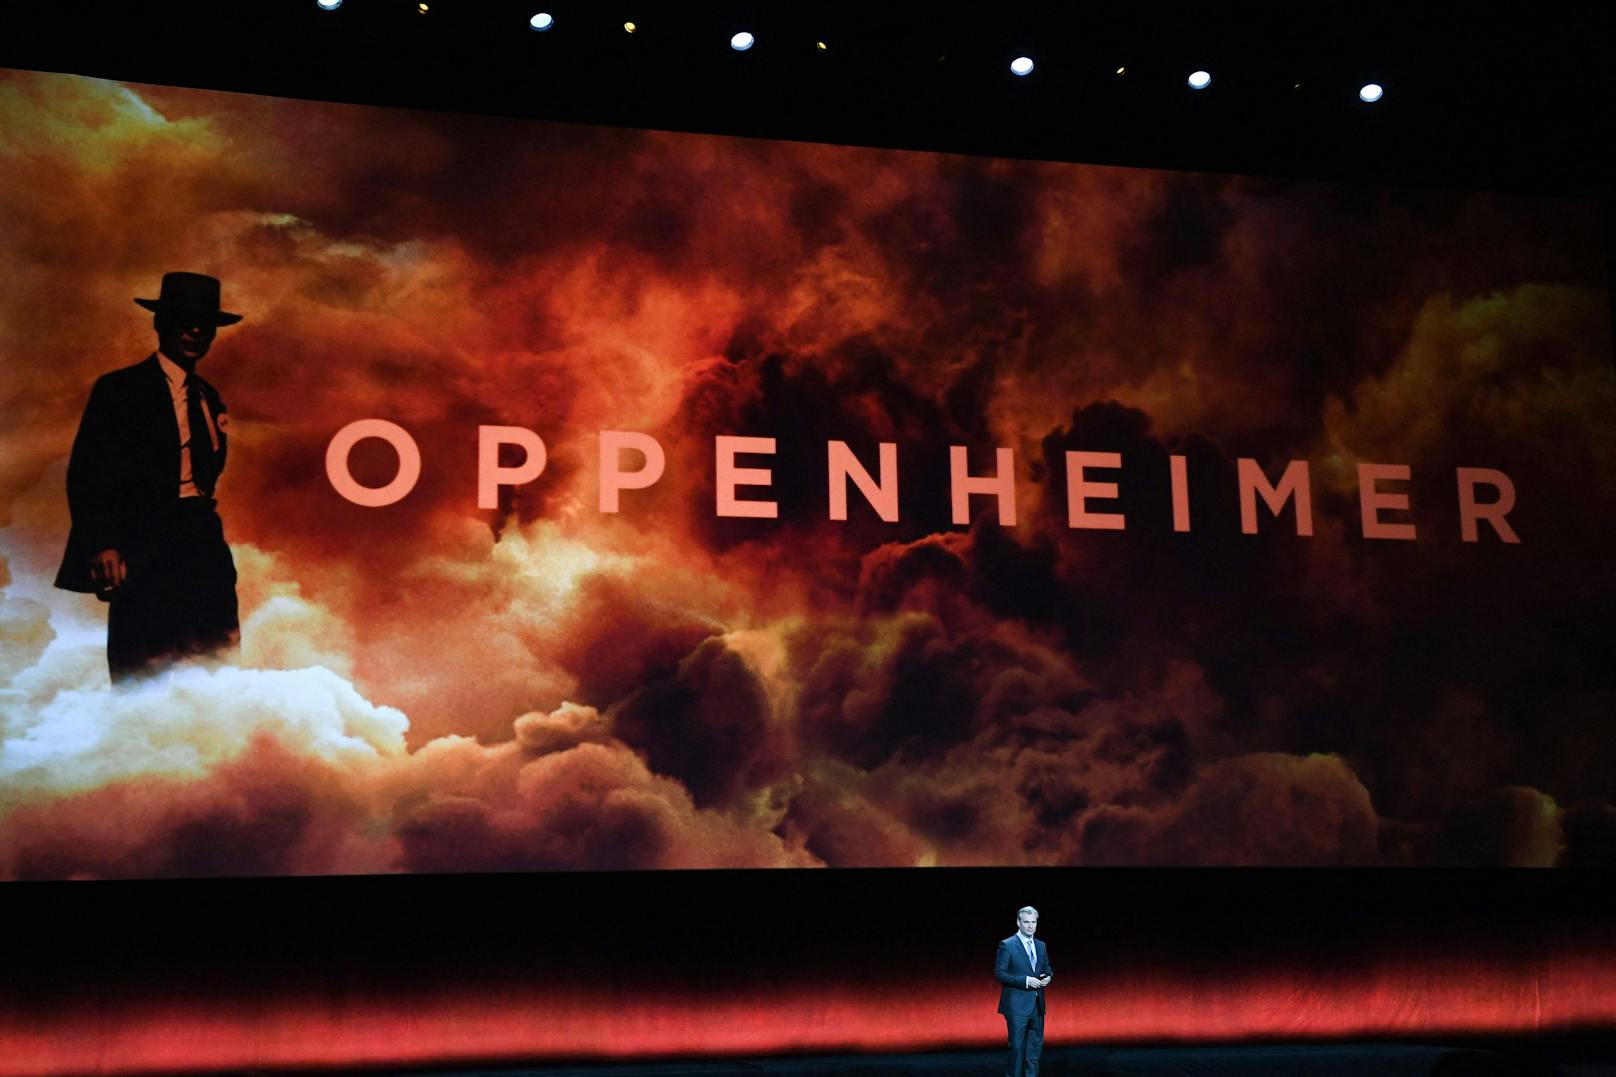 Das düstere Drama "Oppenheimer" von Christopher Nolan erzählt Geschichte von Robert Oppenheimer, dem Vater der Atombombe. 